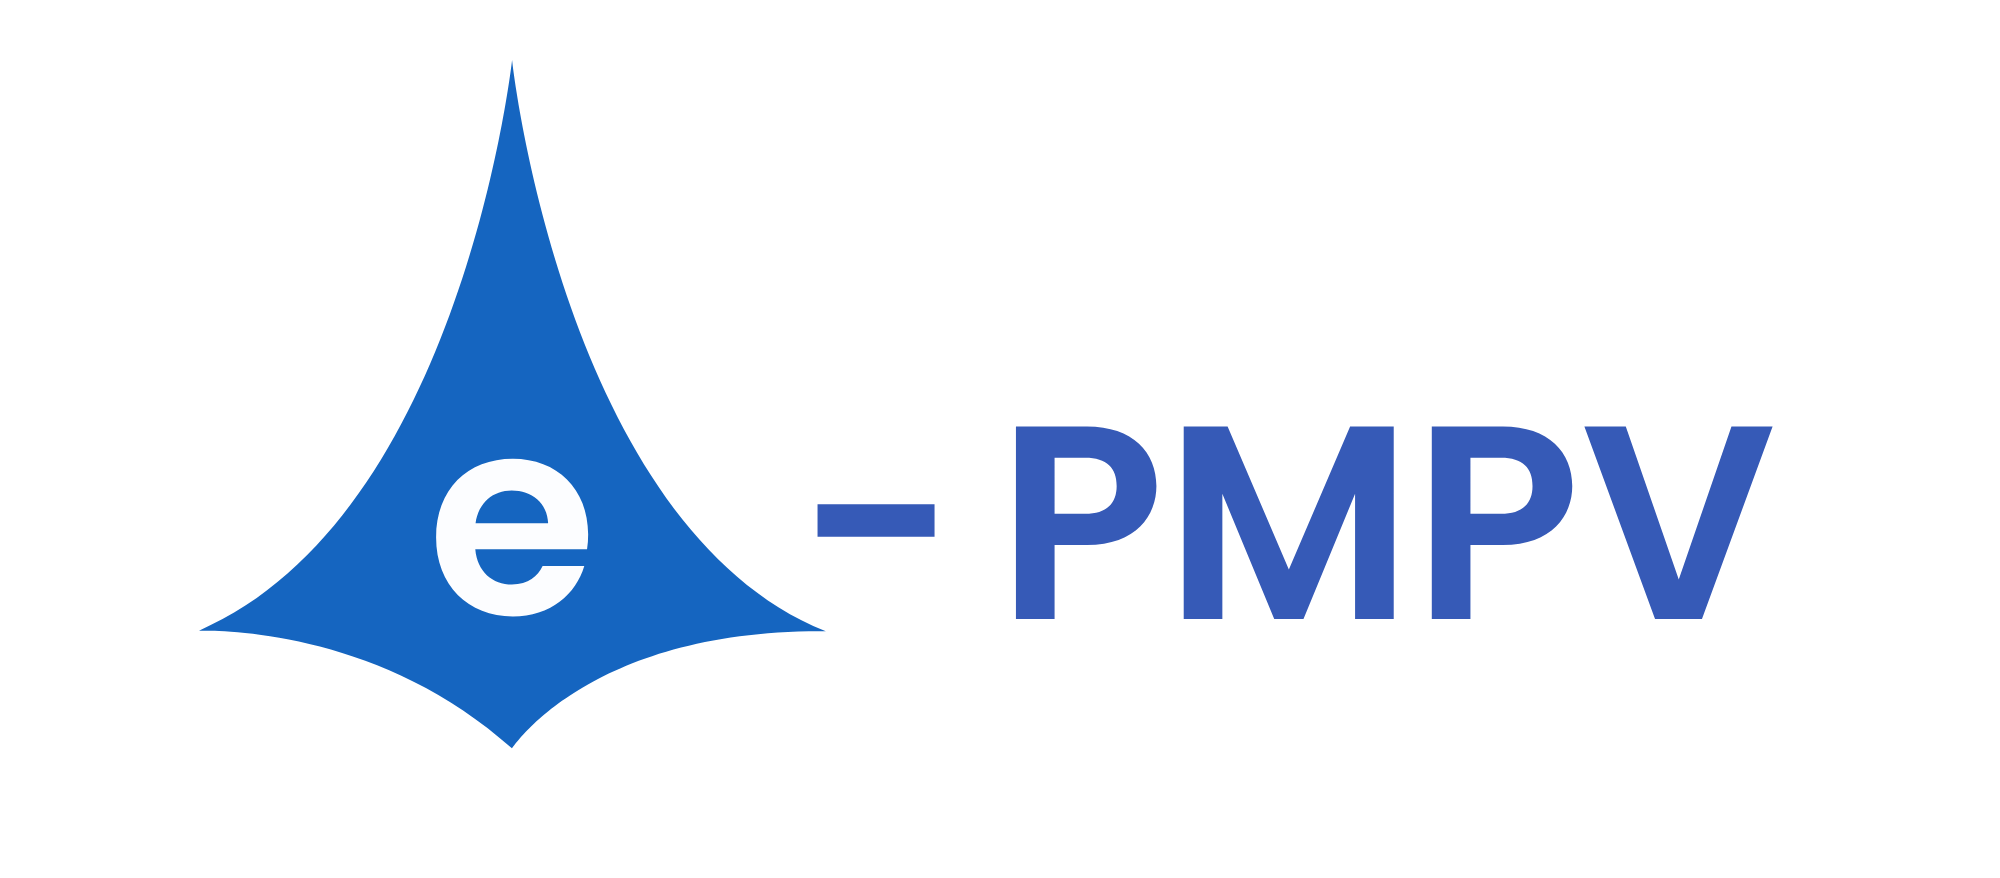 e-PMPV